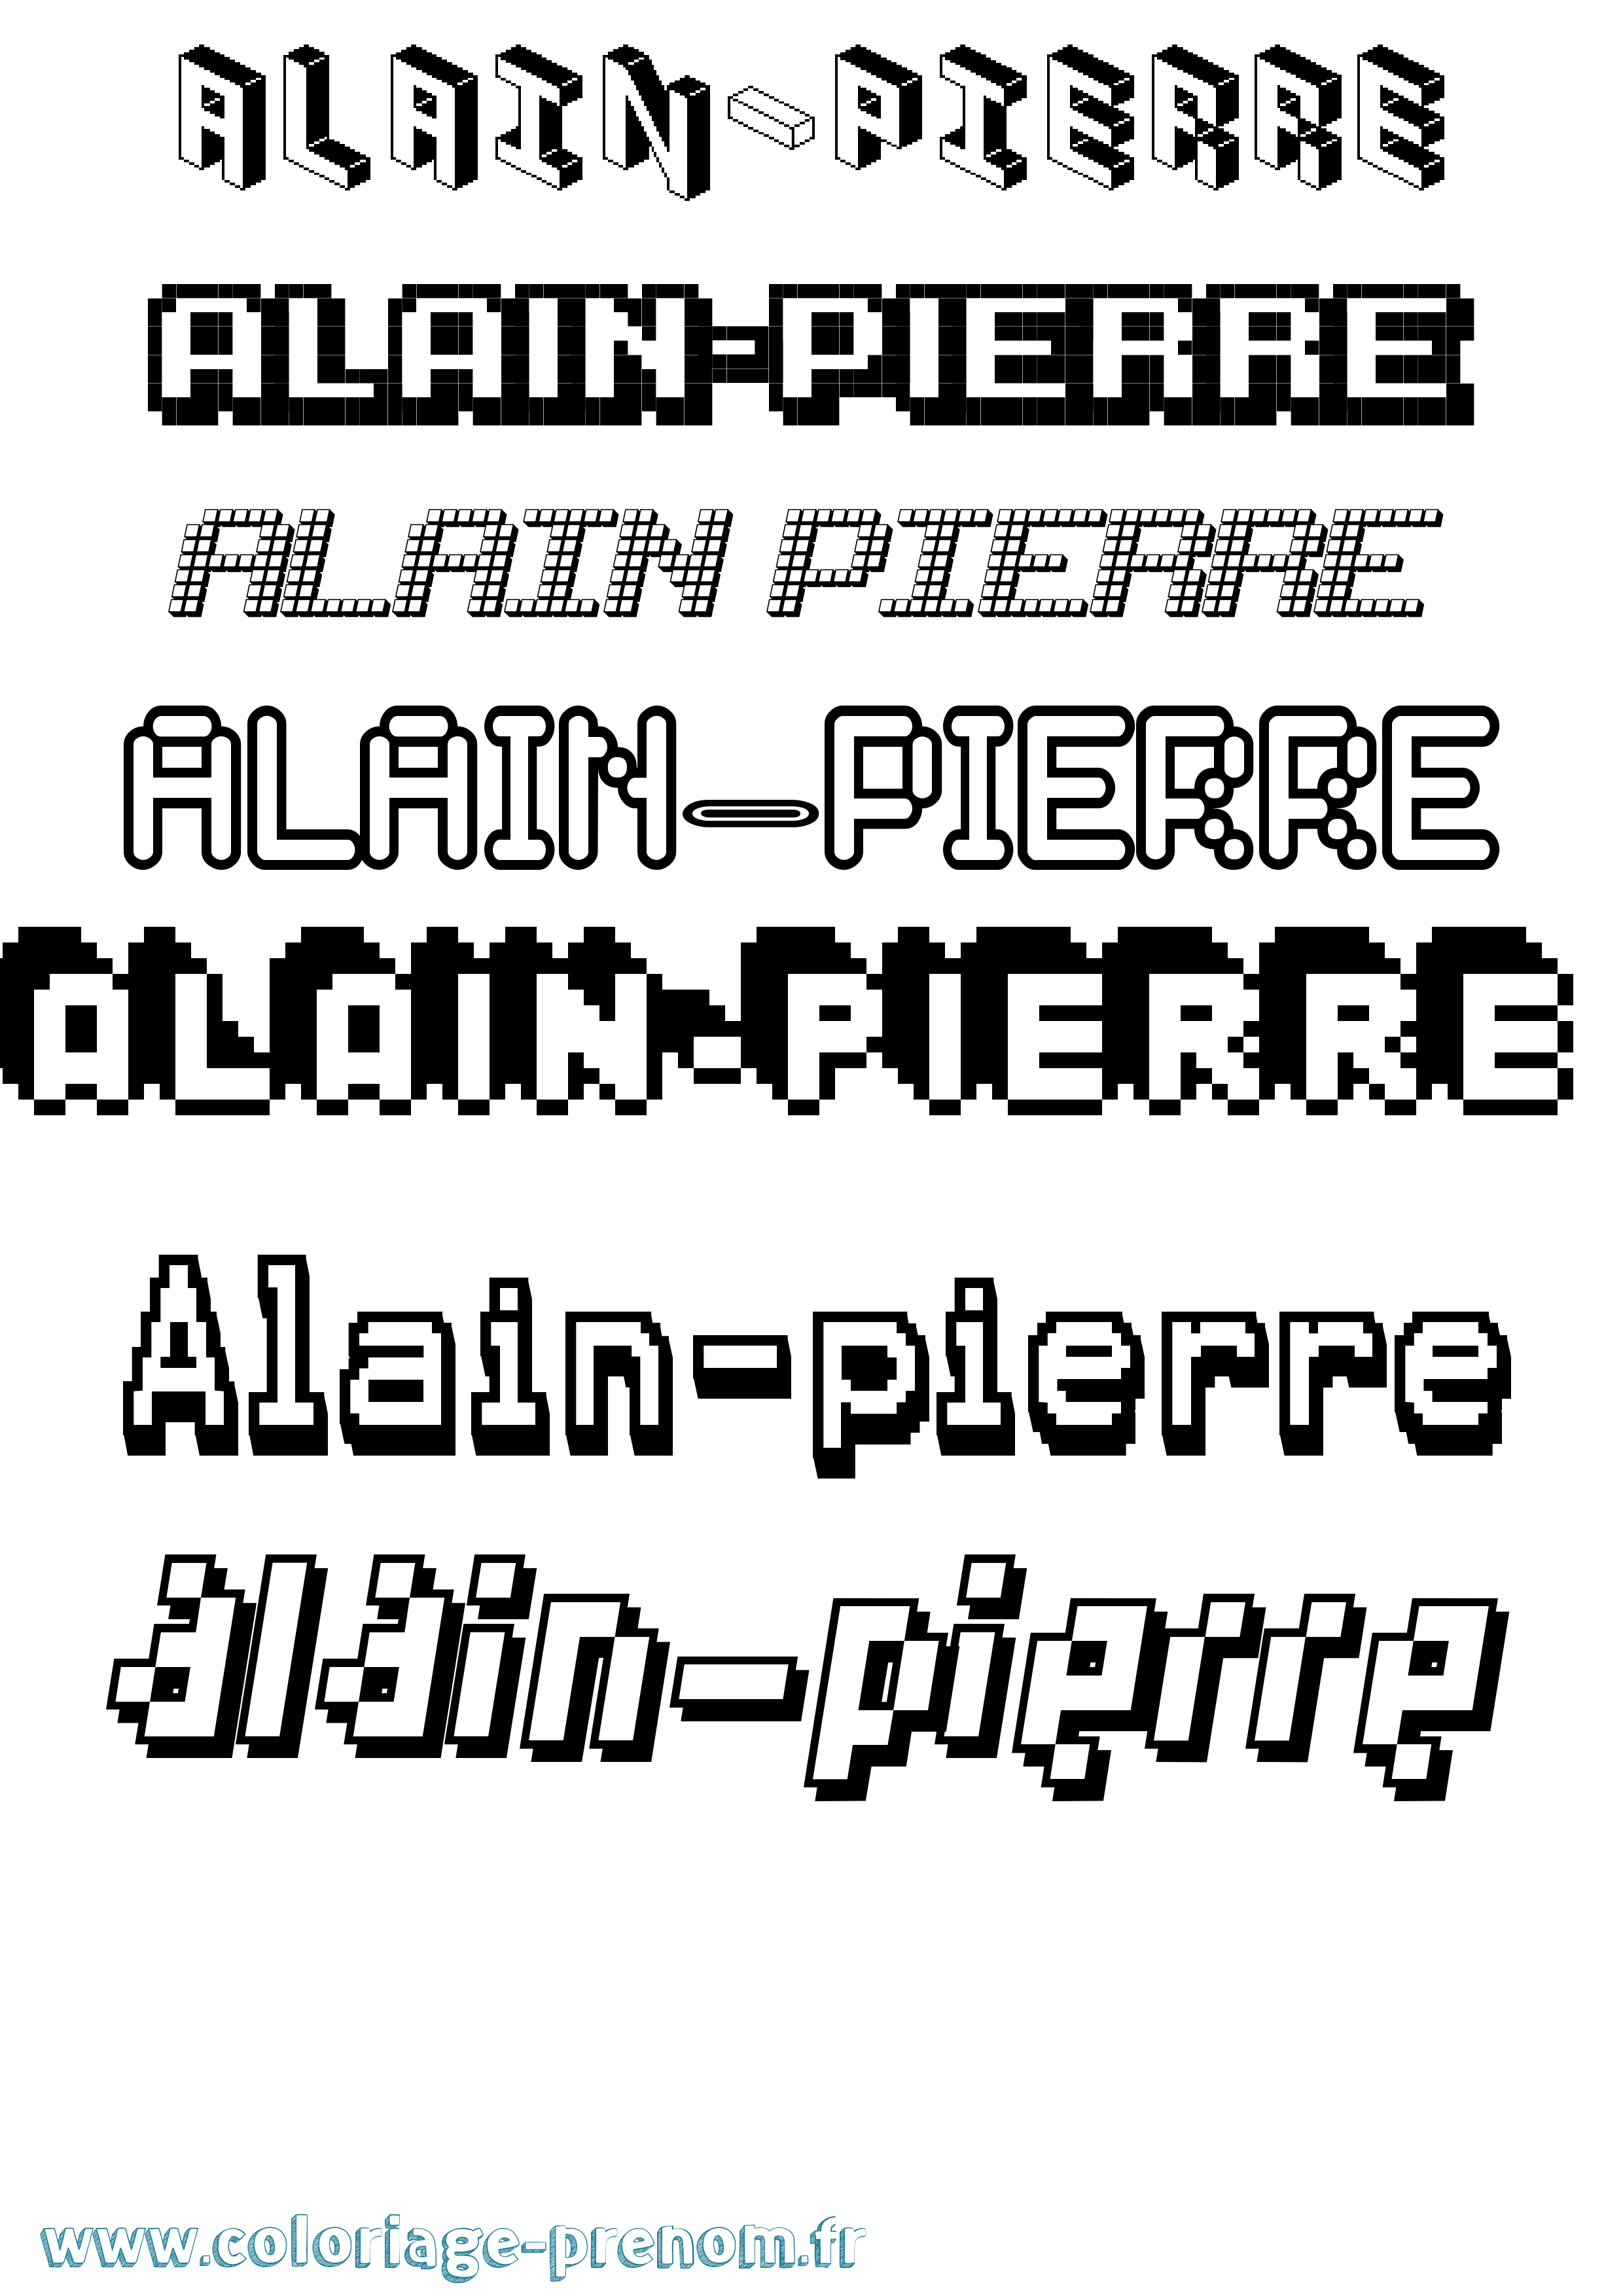 Coloriage prénom Alain-Pierre Pixel